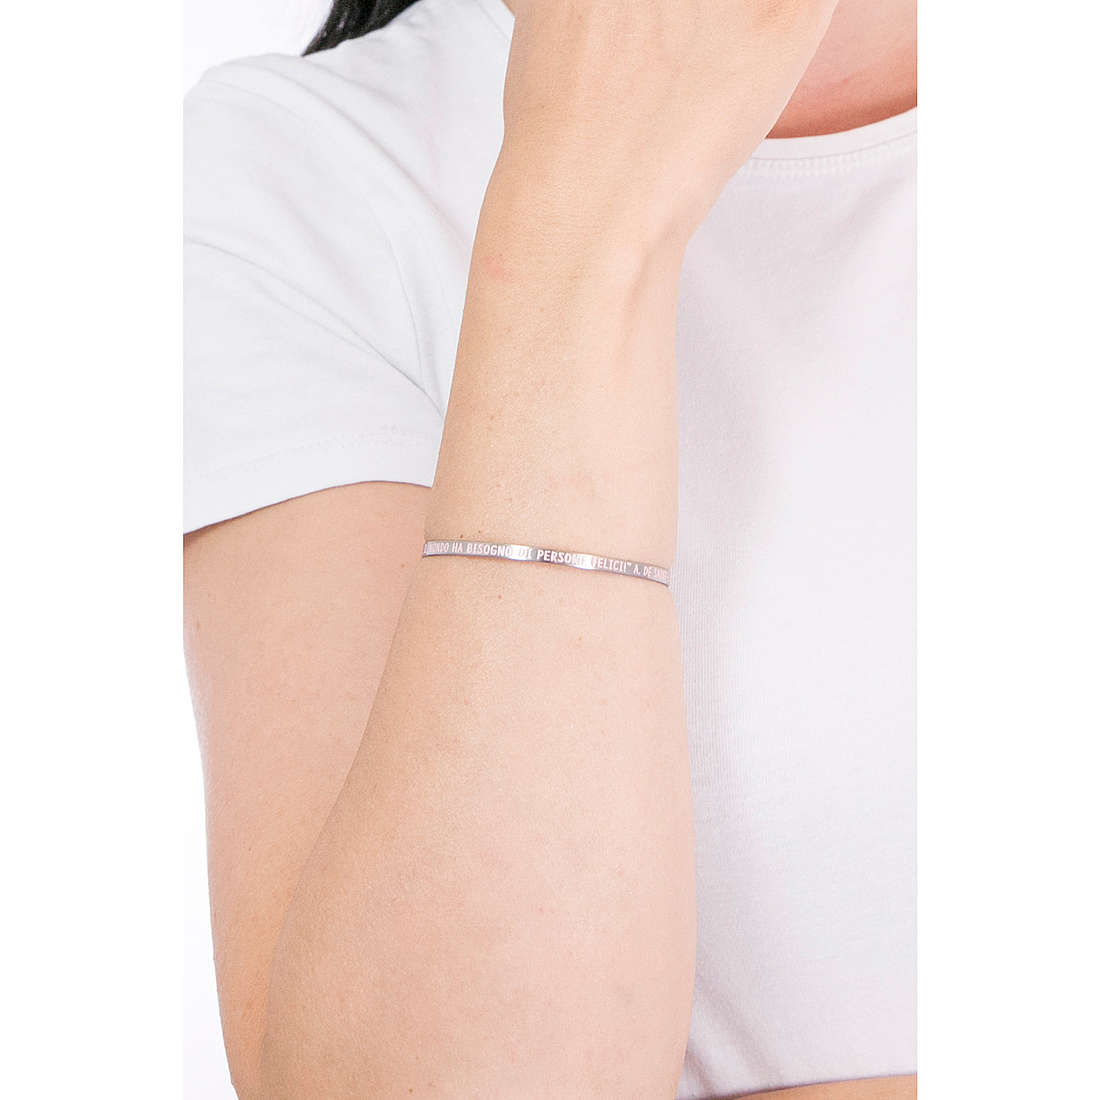 Kidult bracelets Philosophy woman 731736 wearing